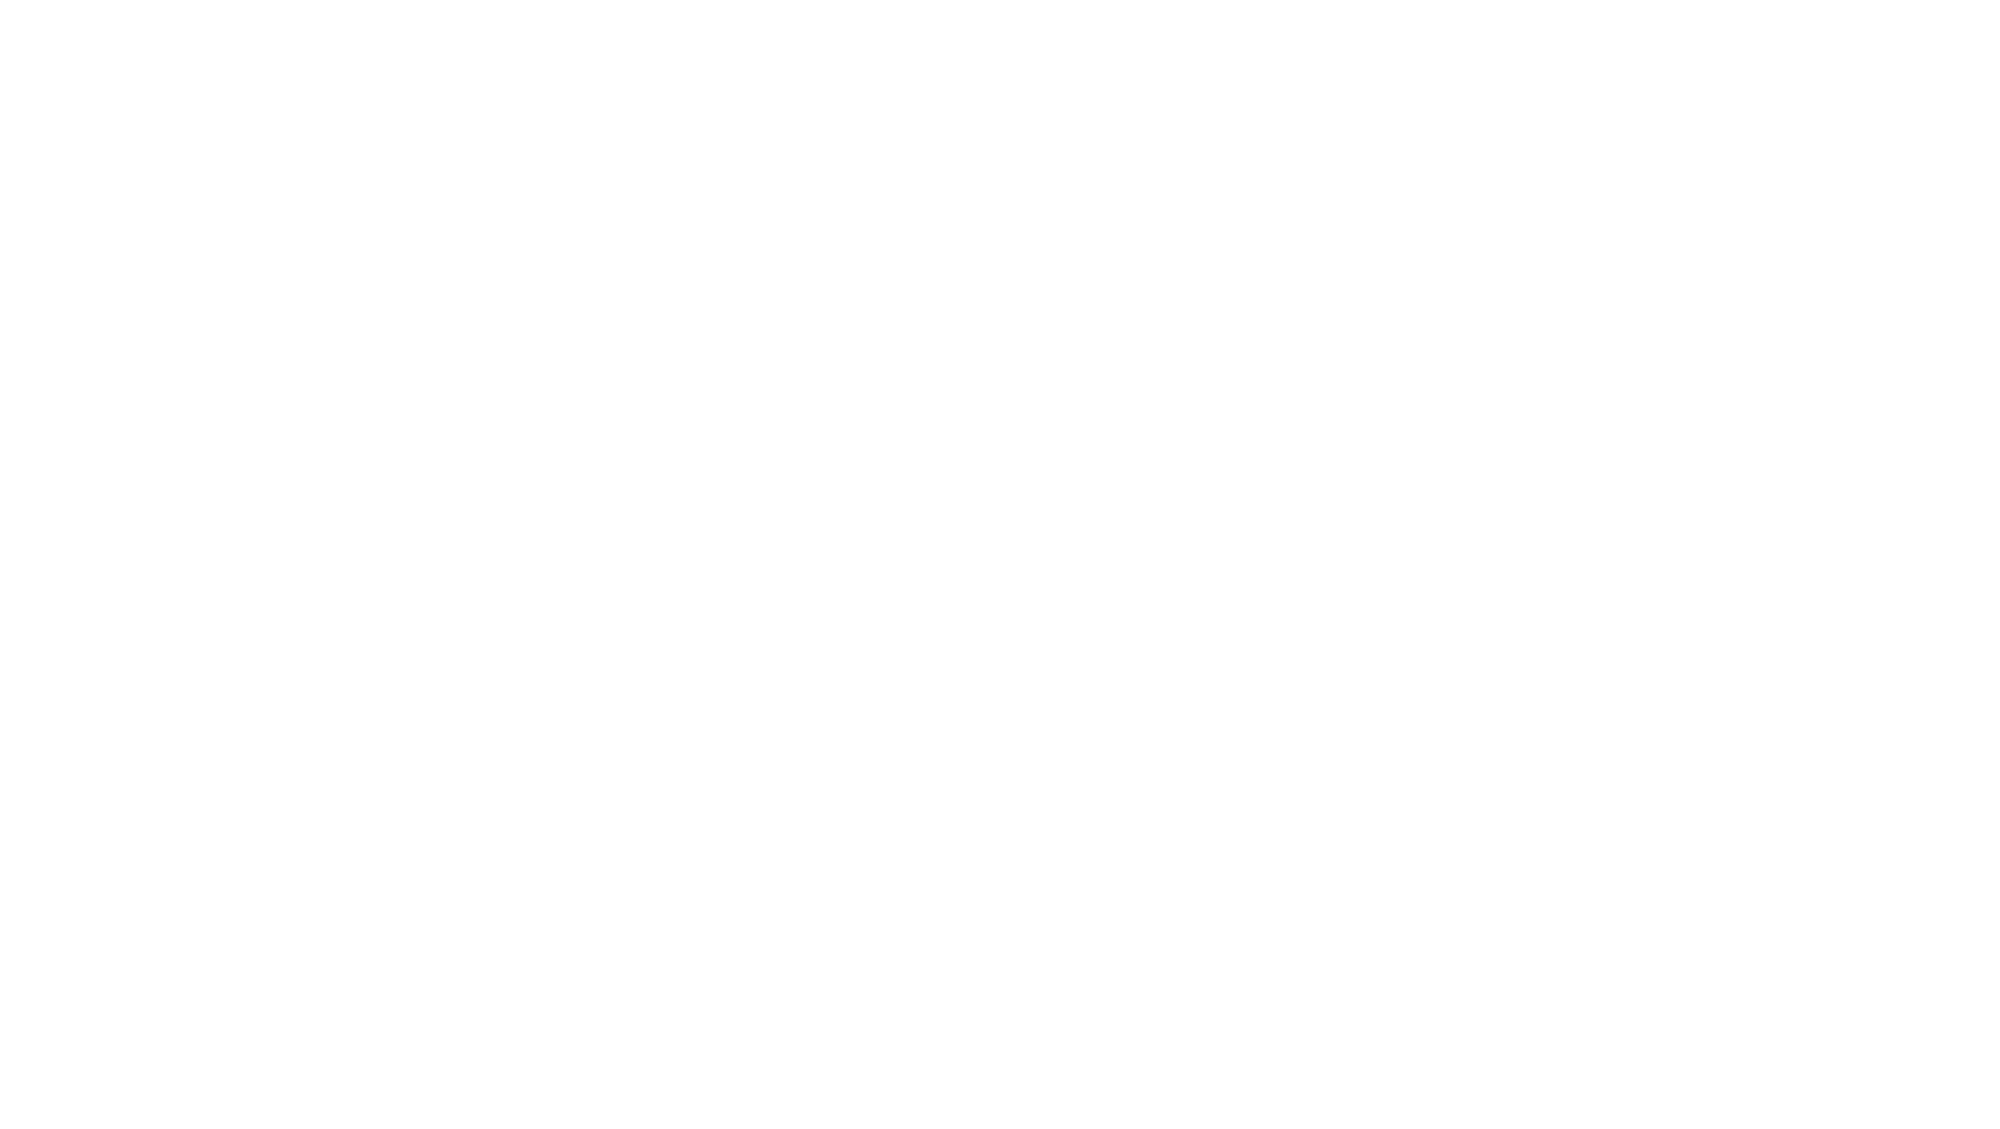 logo for allegro pointe